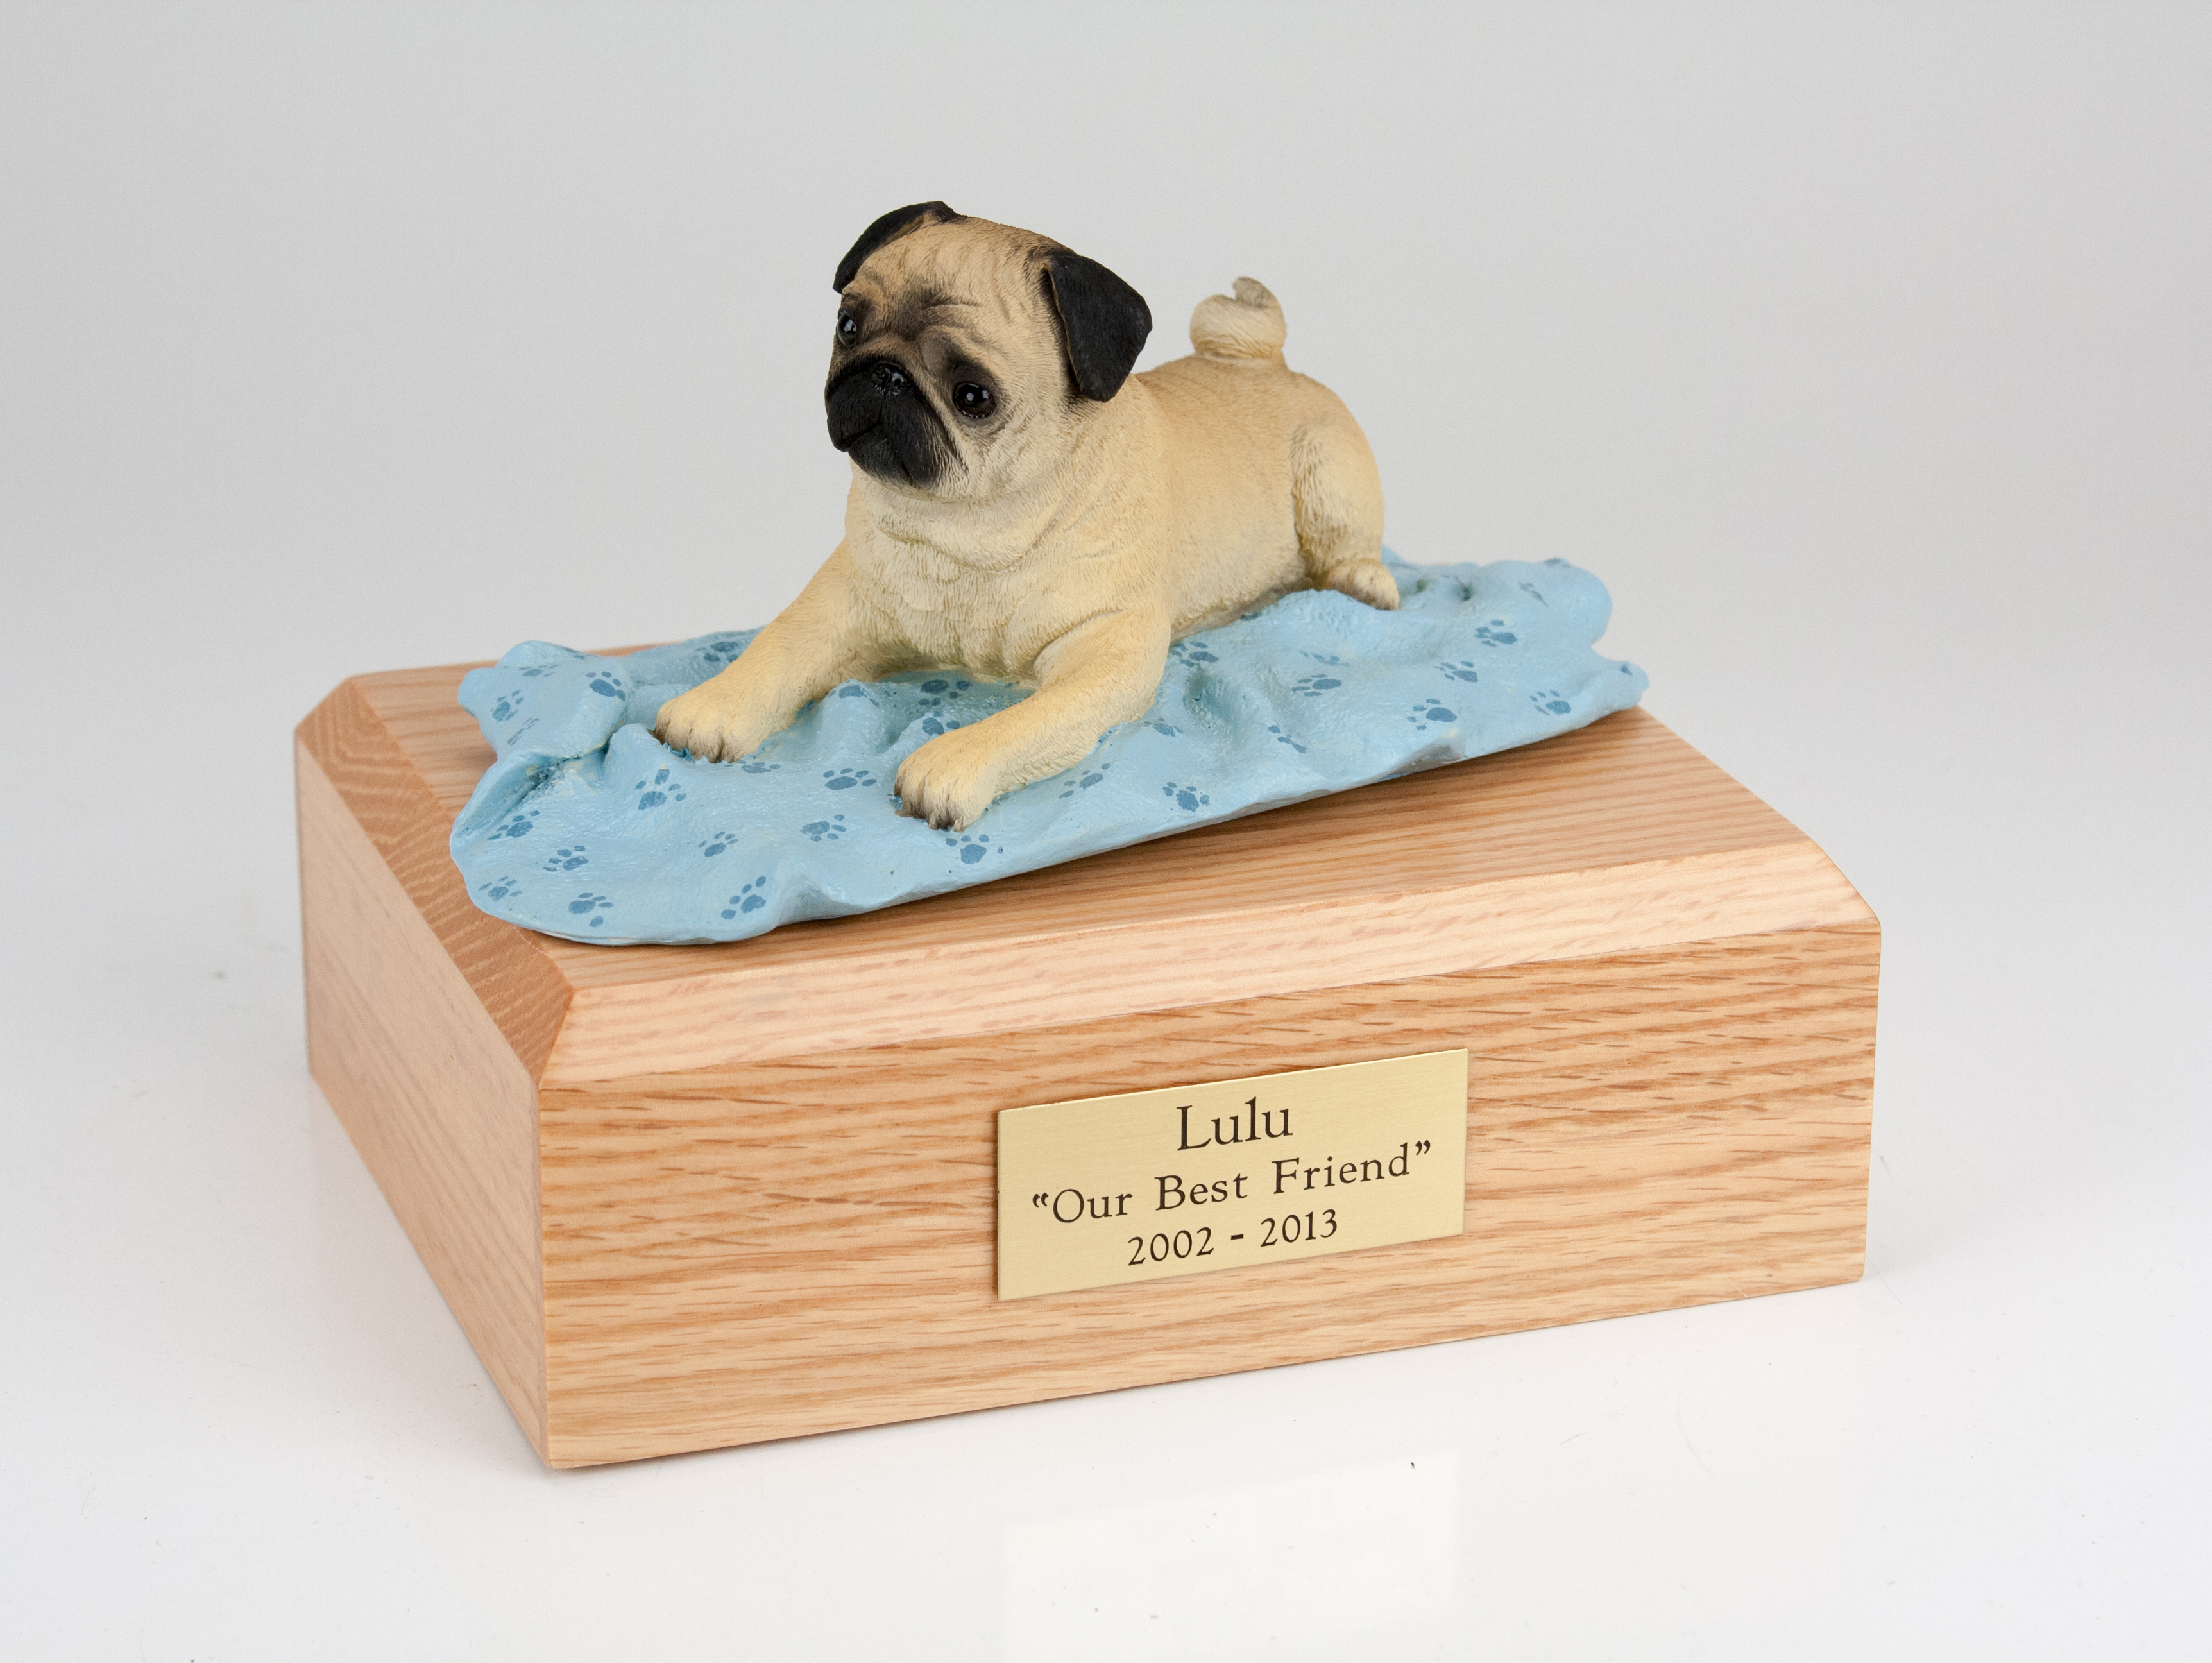 Dog, Pug, Fawn - Figurine Urn